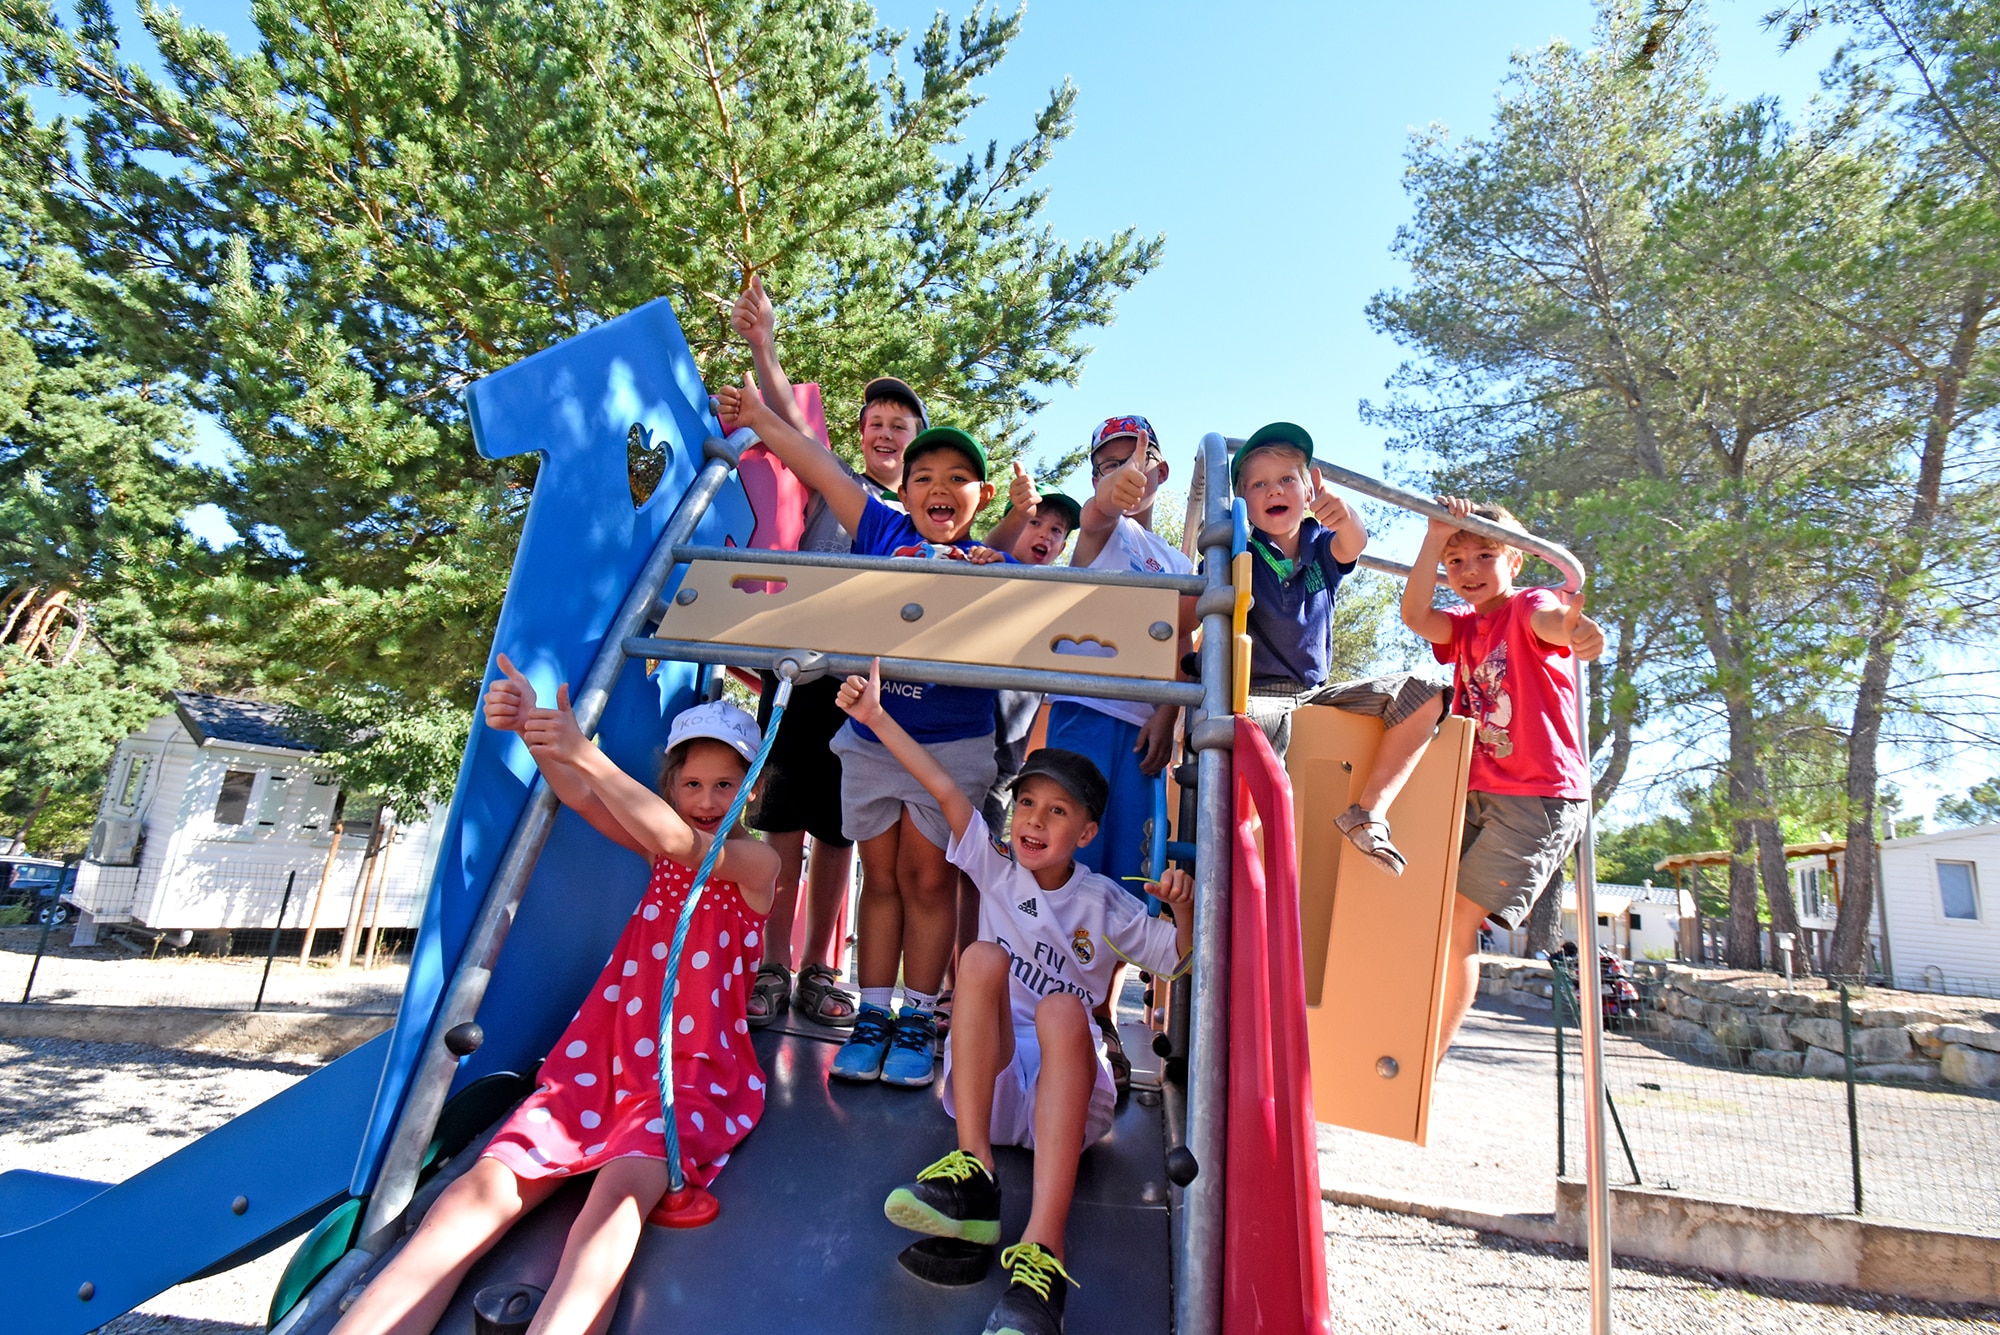 Club enfants à l'aire de jeux du camping La Pinède dans le Verdon